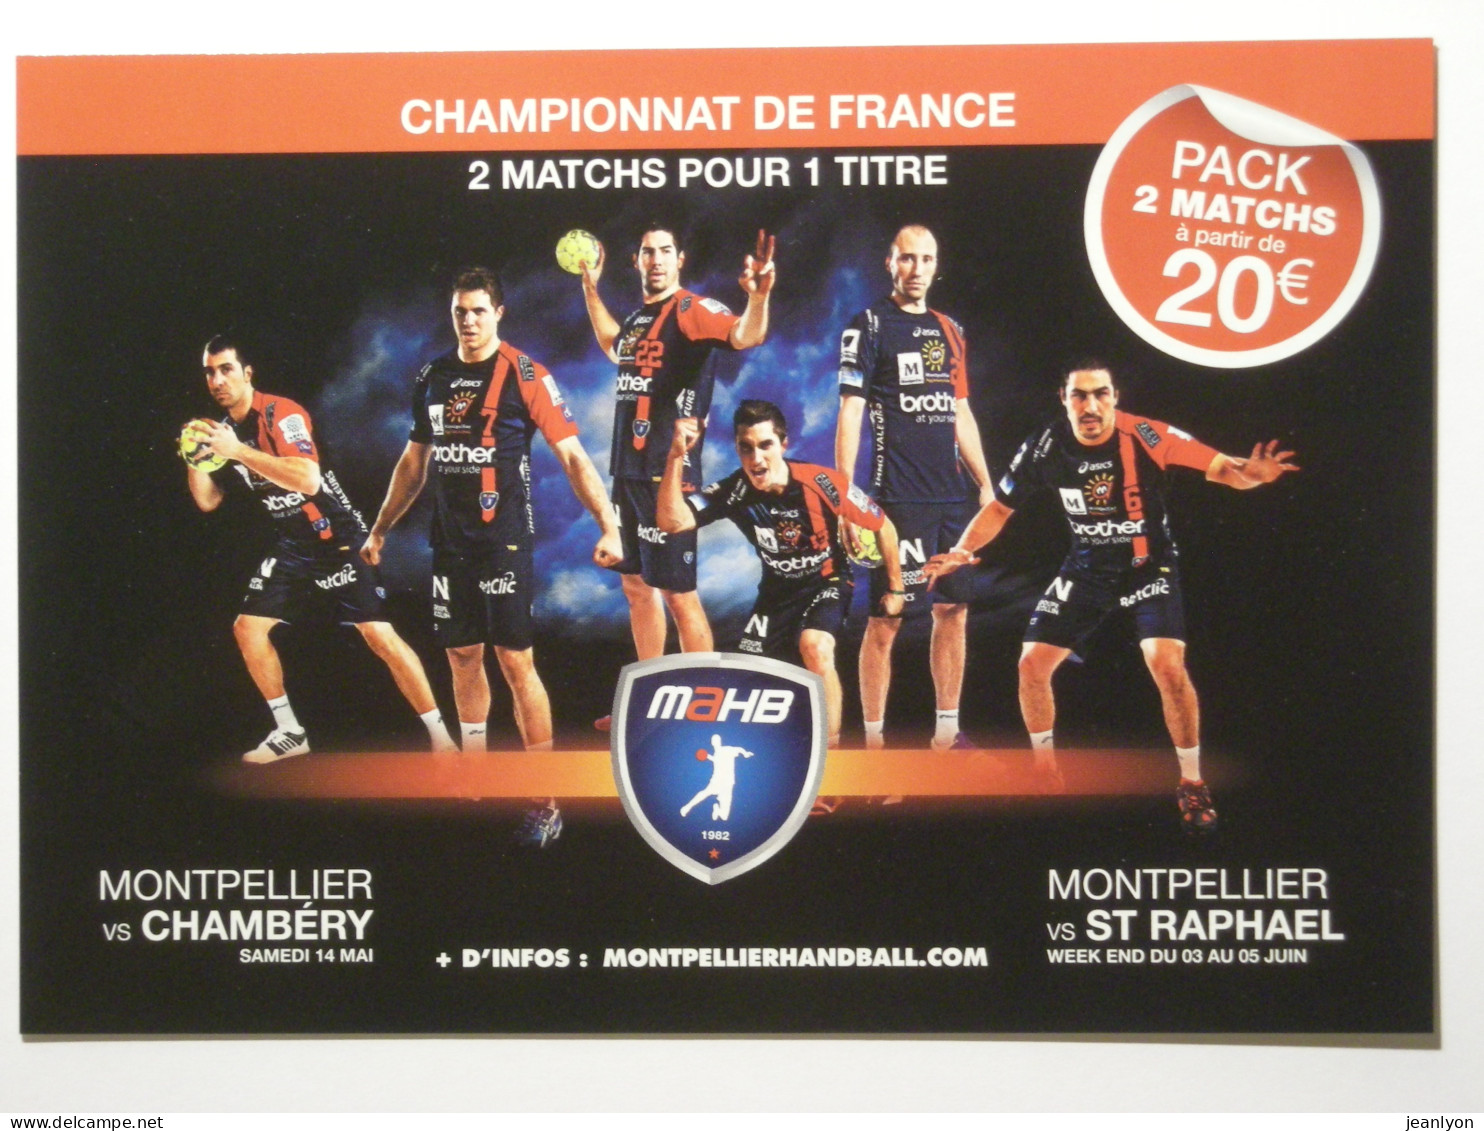 HANDBALL - MONTPELLIER - MAHB - Joueurs De Hand, équipe Karabatic - Championnat France 2011 - Carte Publicitaire - Handball